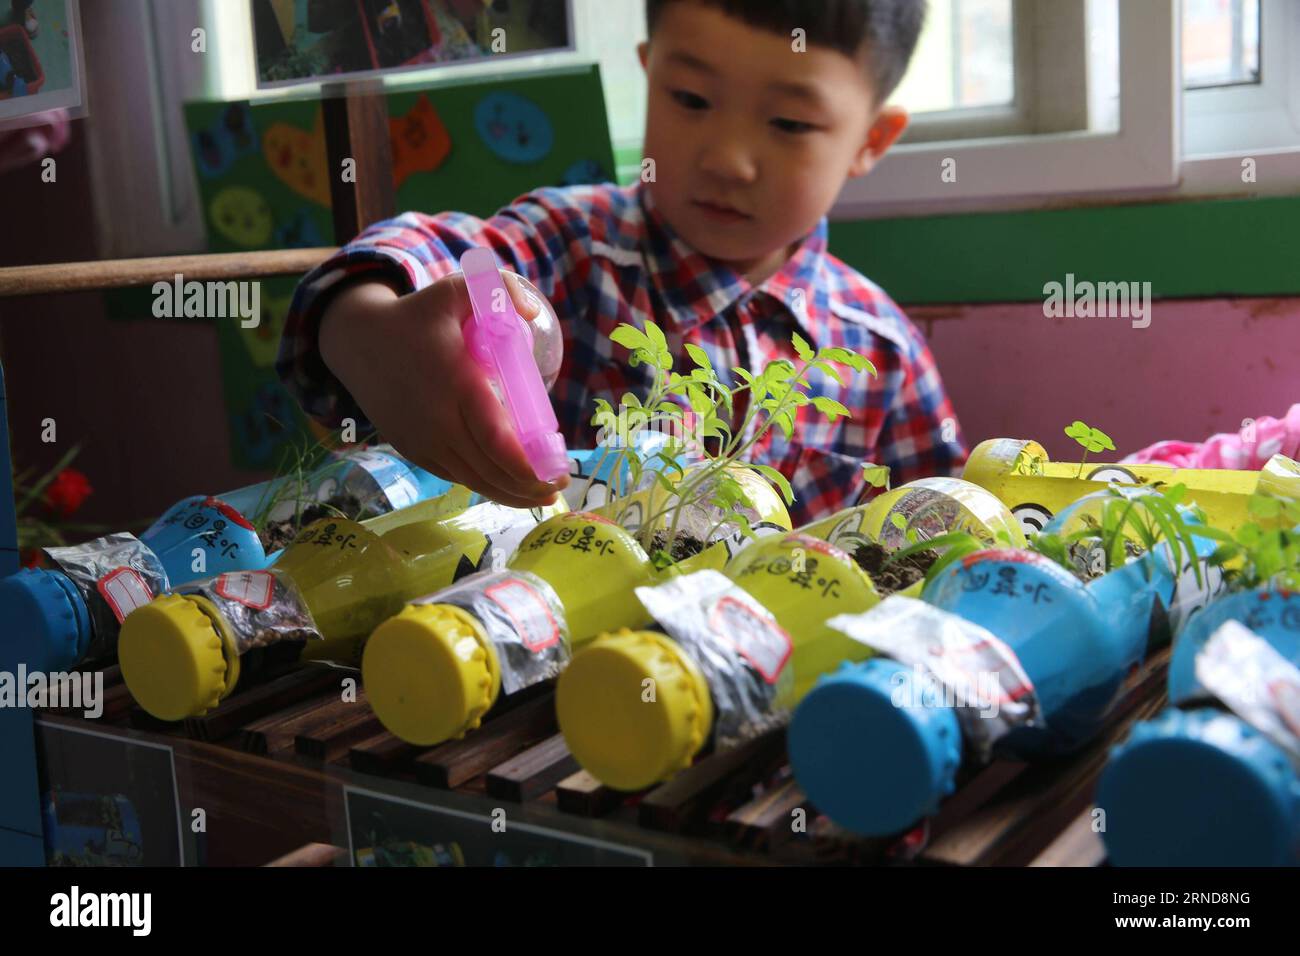 XIANGYANG, le 09 mai 2016 -- Un enfant arrose des fleurs dans des pots qu'il a fabriqués dans une classe du jardin d'enfants expérimental de Xiangyang à Xiangyang, dans la province du Hubei, au centre de la Chine, le 9 mai 2016. Le jardin d ' enfants de Xiangyang a installé des coins de plantation dans ses salles de classe à partir du trimestre de printemps en 2016, où les enfants peuvent avoir une expérience de plantation et observer la culture des plantes sous la direction de leur enseignant. (Zwx) CHINA-HUBEI-XIANGYANG-KINDERGARTEN-PLANTING CORNER(CN) WangxHu PUBLICATIONxNOTxINxCHN Xiang Yang Mai 09 2016 un enfant arrose des fleurs dans un pot qu'il a fait DANS une salle de classe de Xiang Yang Experimental Ki Banque D'Images